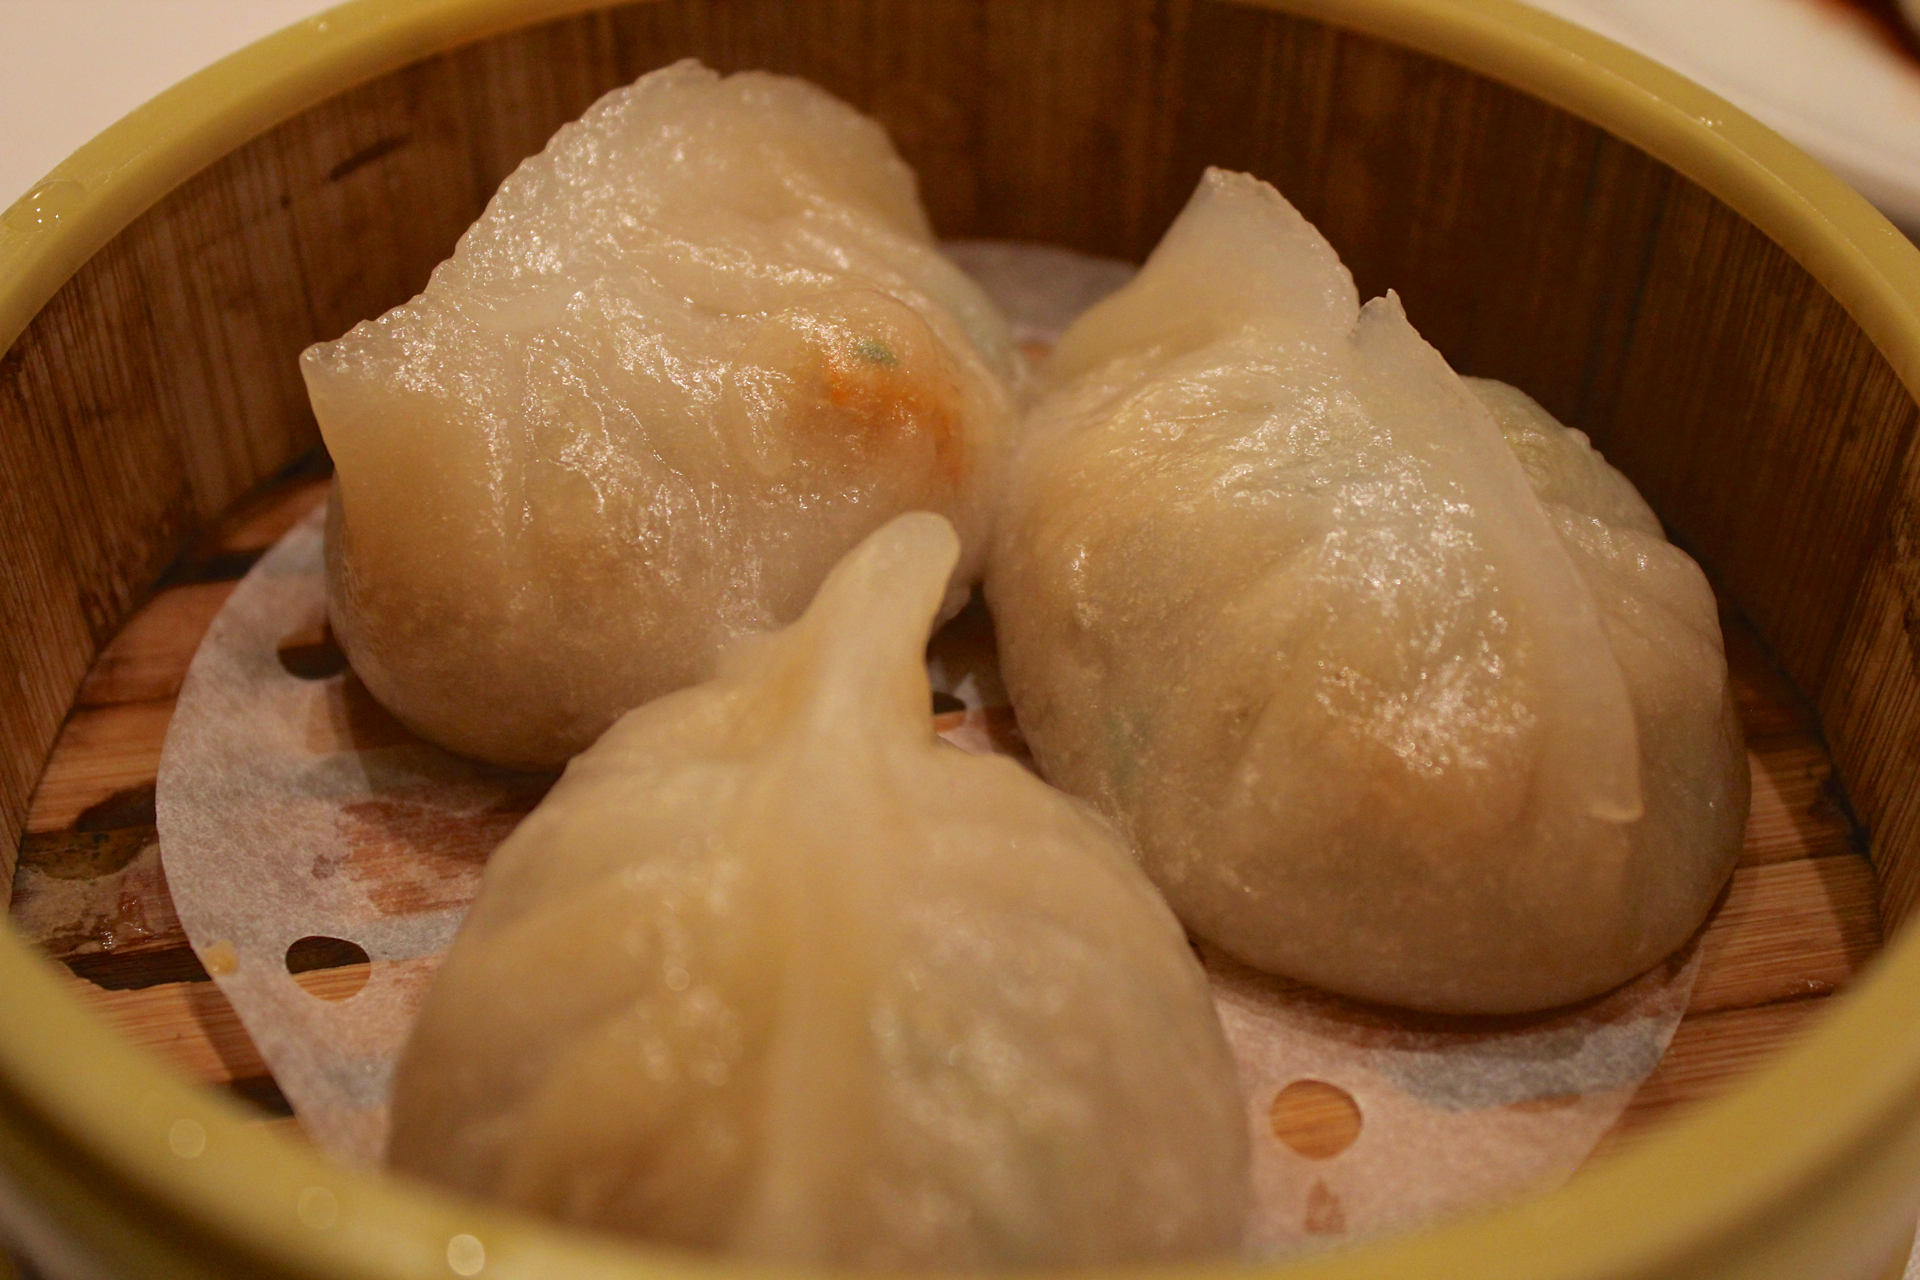 Pork and dried shrimp dumplings at Tai Pan.